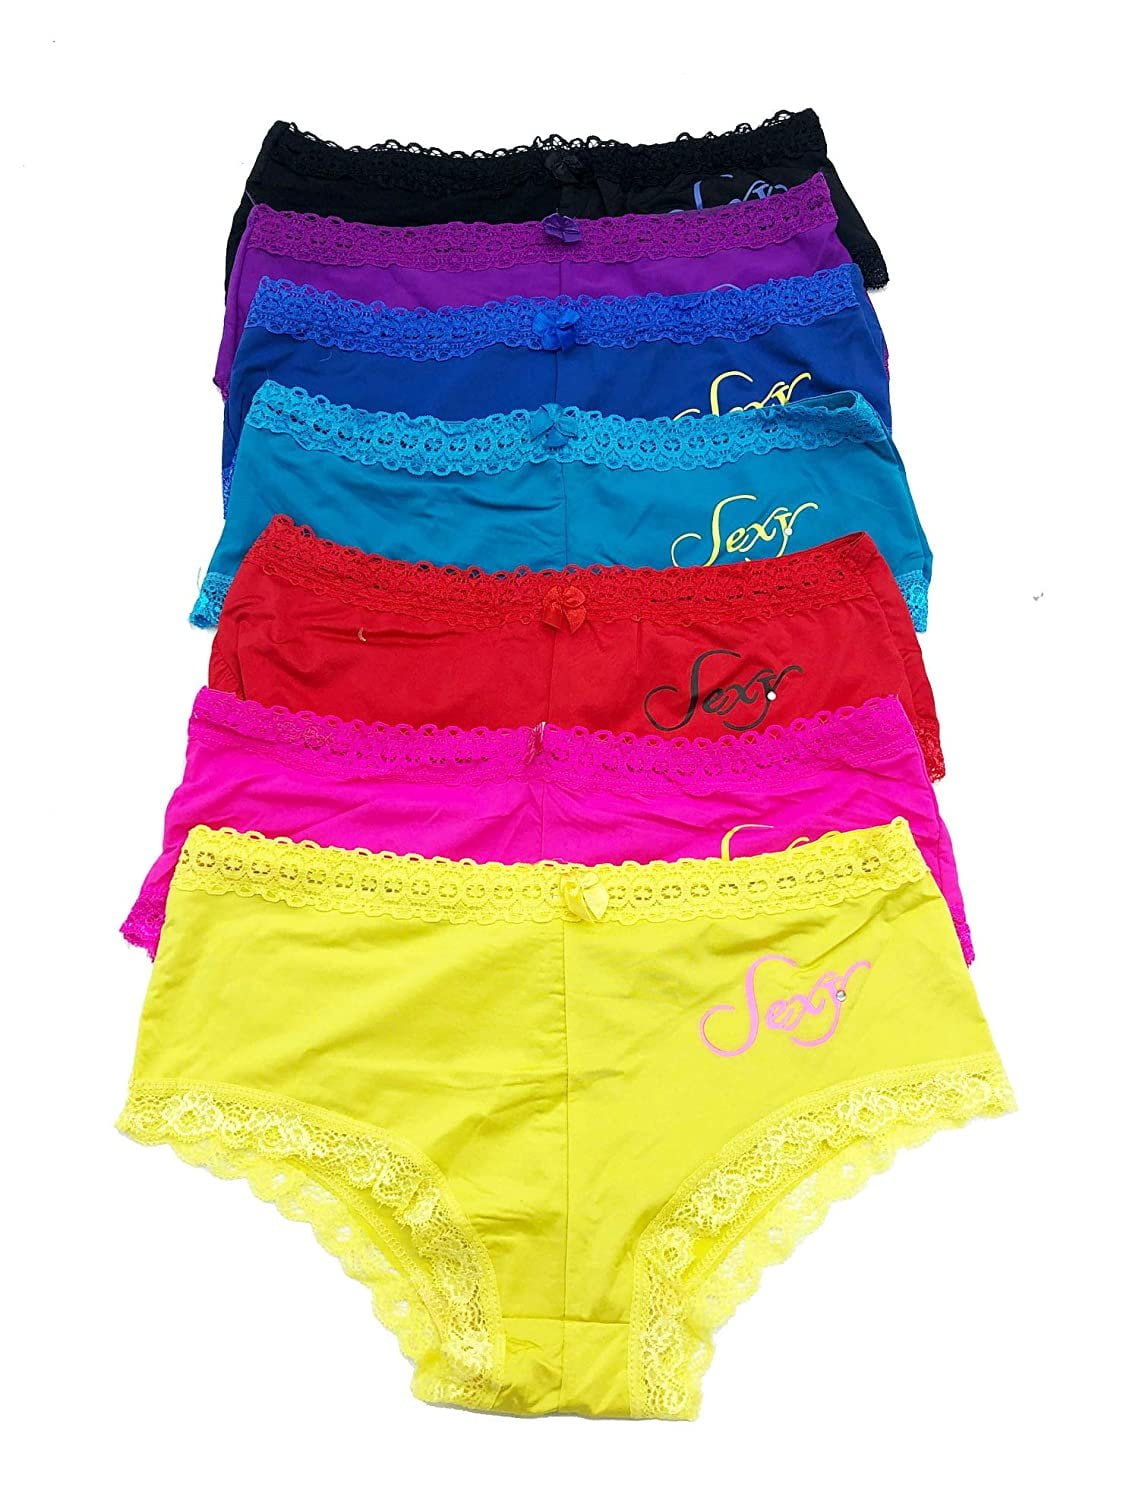 6 pieces Underwear Basic Women Bikini Panty S-XL (Small) 